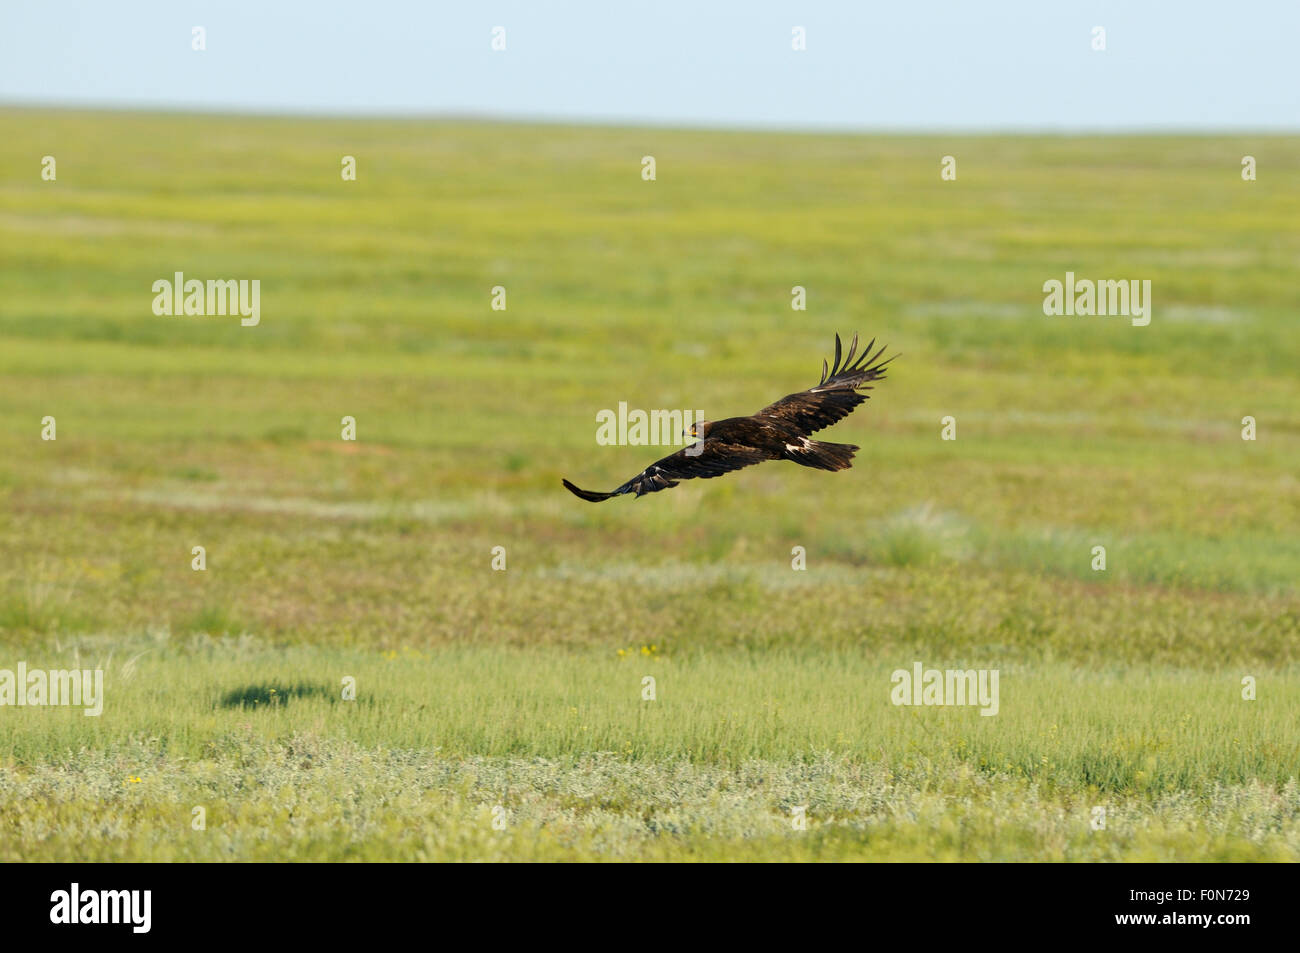 L'aigle des steppes (Aquila nipalensis) en vol, Cherniye zemli (terre noire), Réserve naturelle de Kalmoukie, en Russie, en mai 2009 Banque D'Images